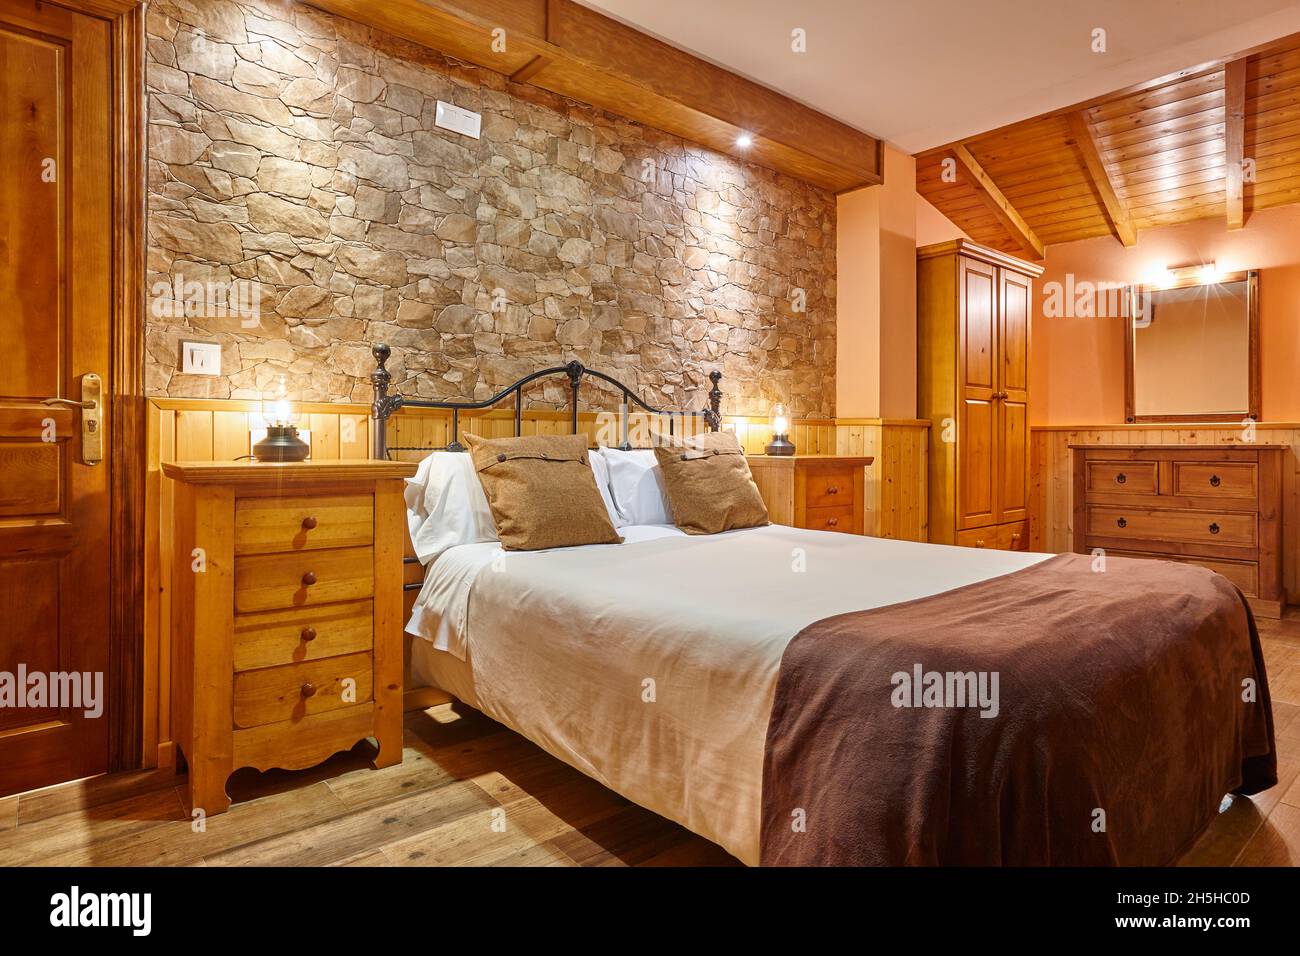 Chambre à l'intérieur de style rustique.Décoration en bois et pierre.Personne  Photo Stock - Alamy